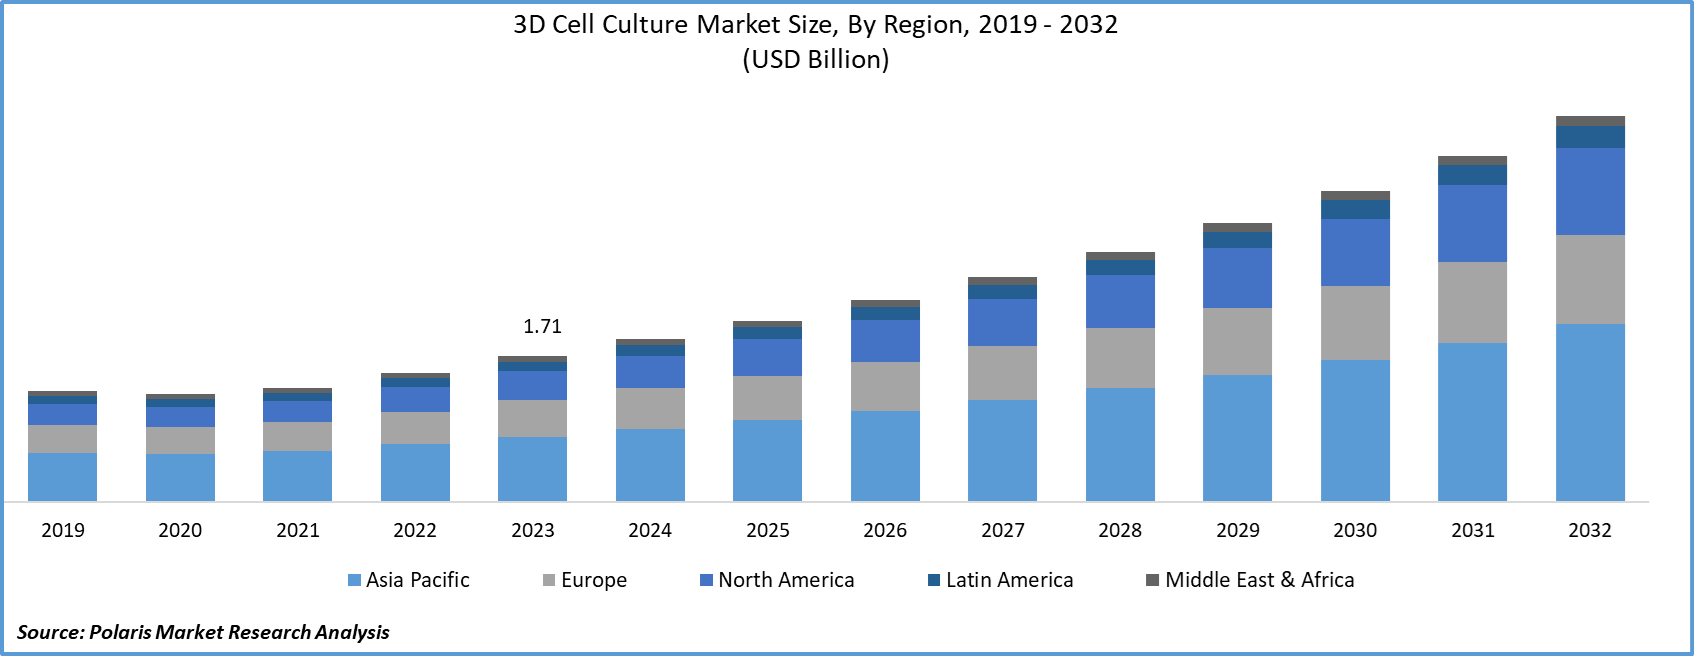 3D Cell Culture Market Size